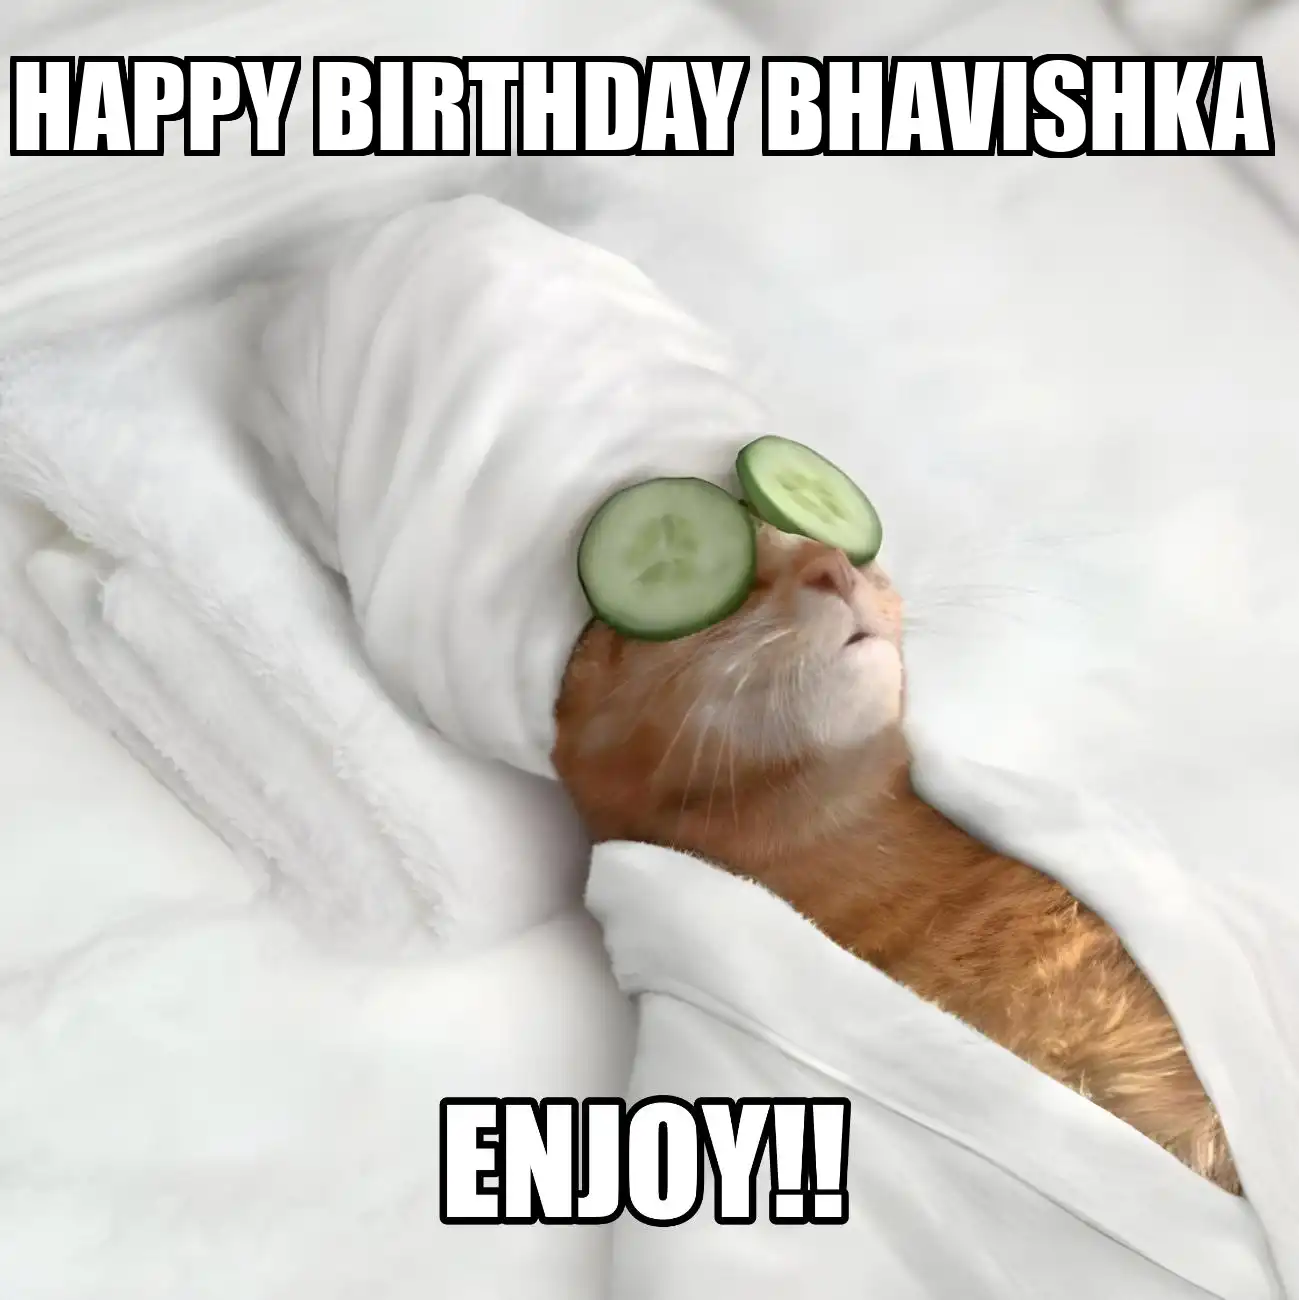 Happy Birthday Bhavishka Enjoy Cat Meme